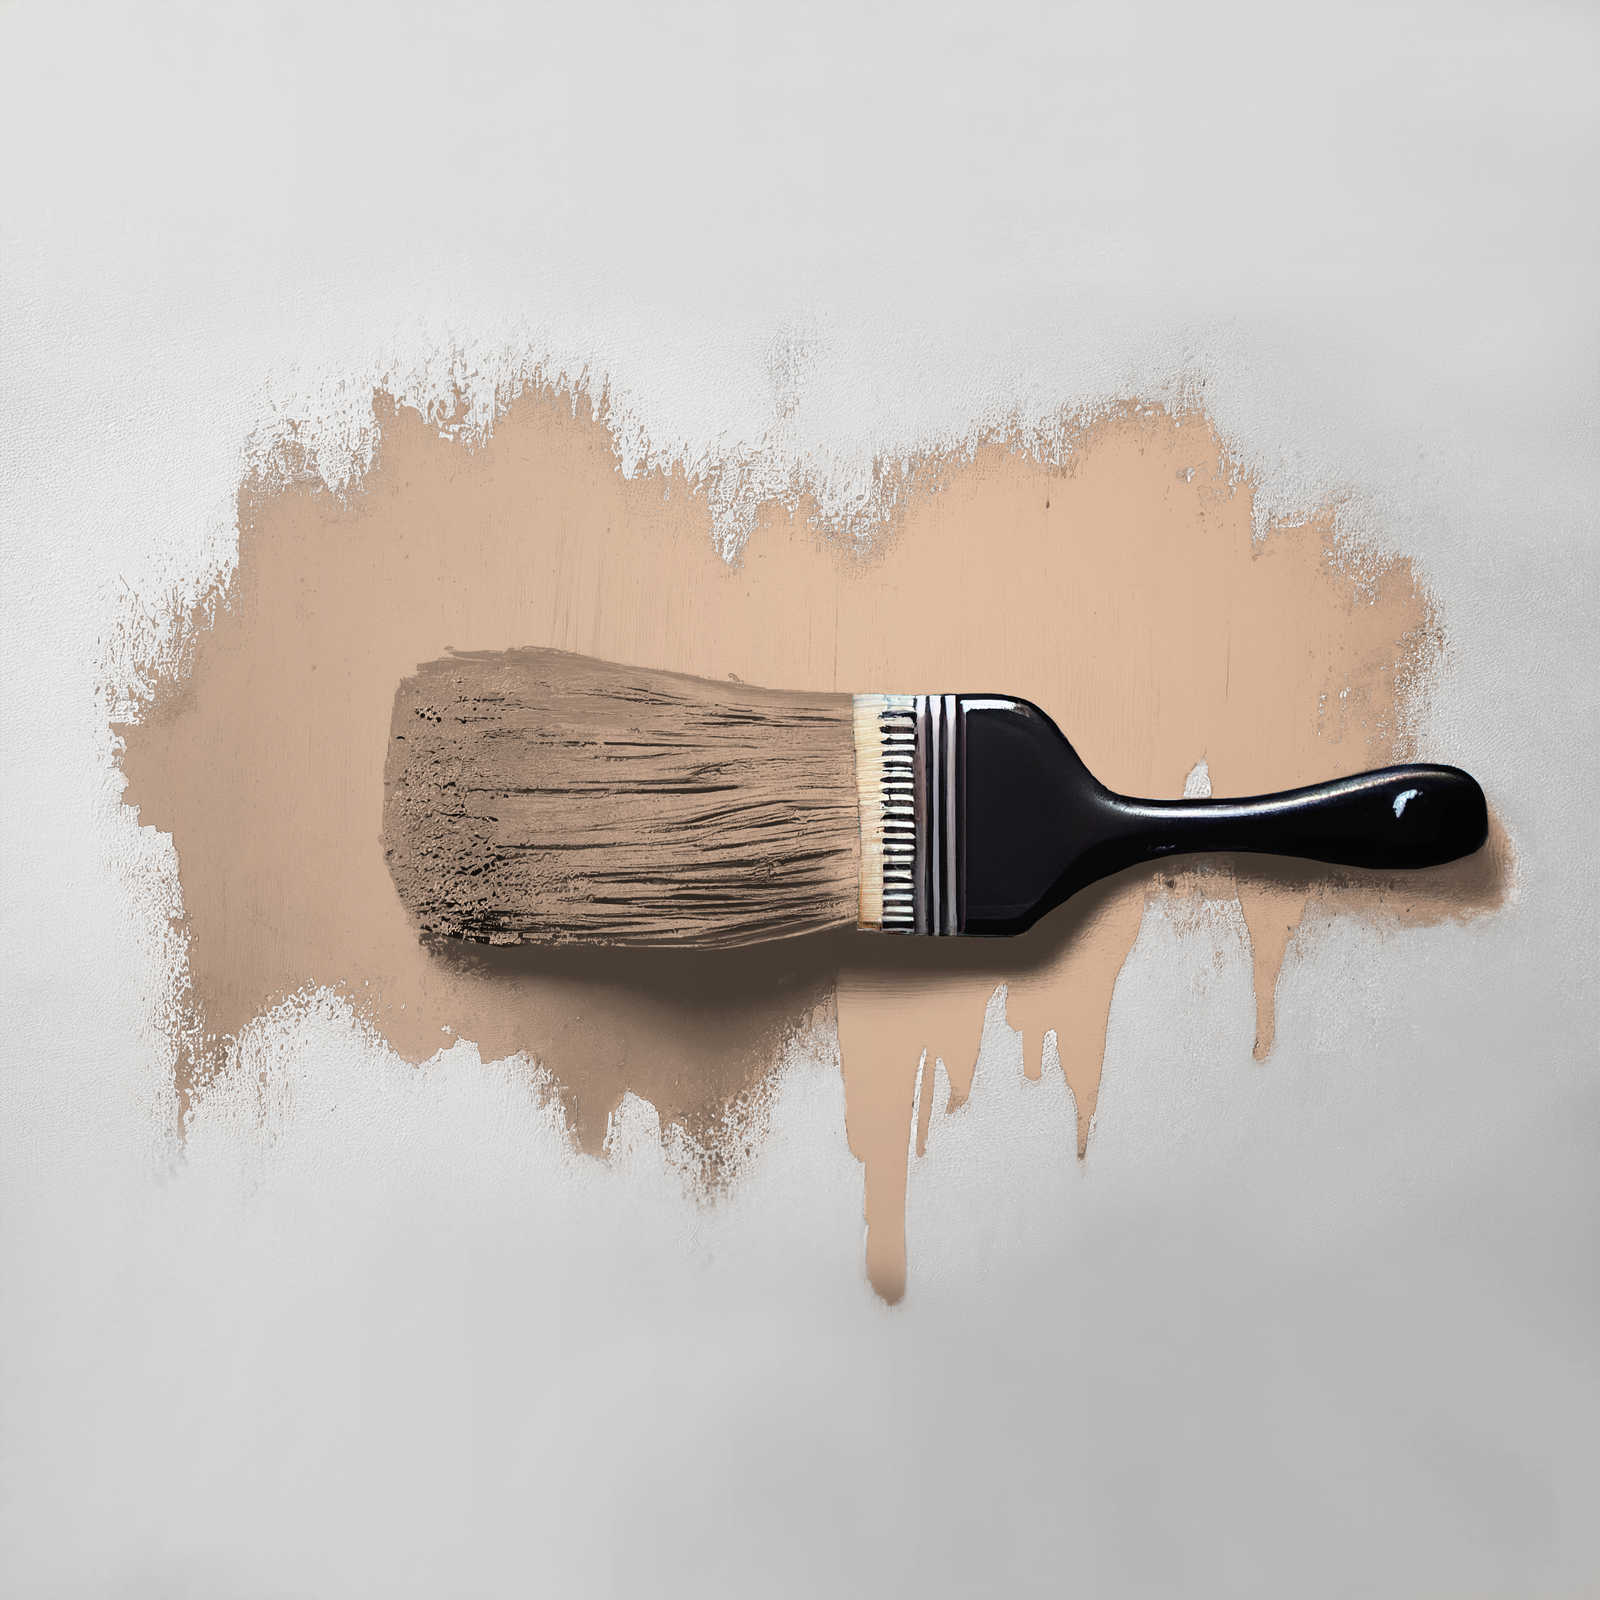             Pittura murale TCK6021 »Lovely Lentil« in beige caldo – 5,0 litri
        